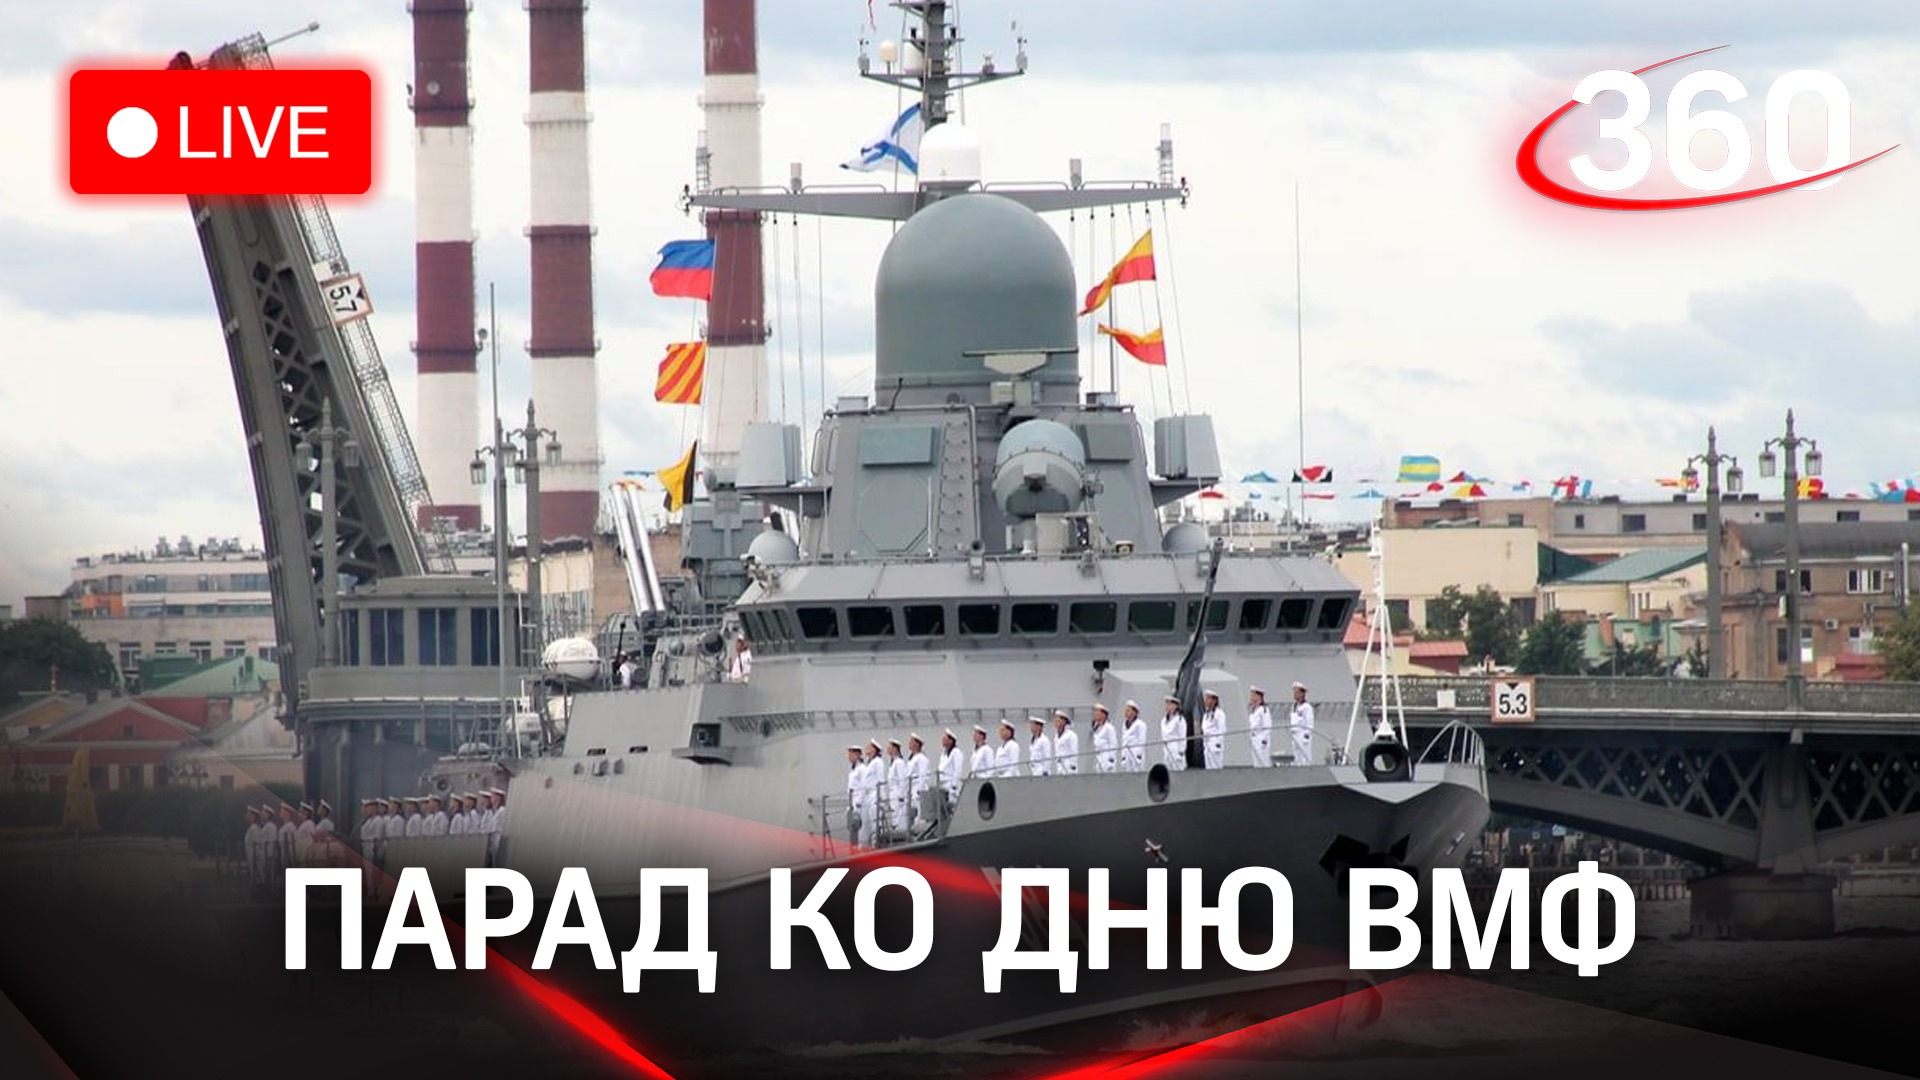 Владимир Путин принимает участие в праздновании дня ВМФ в Санкт-Петербурге